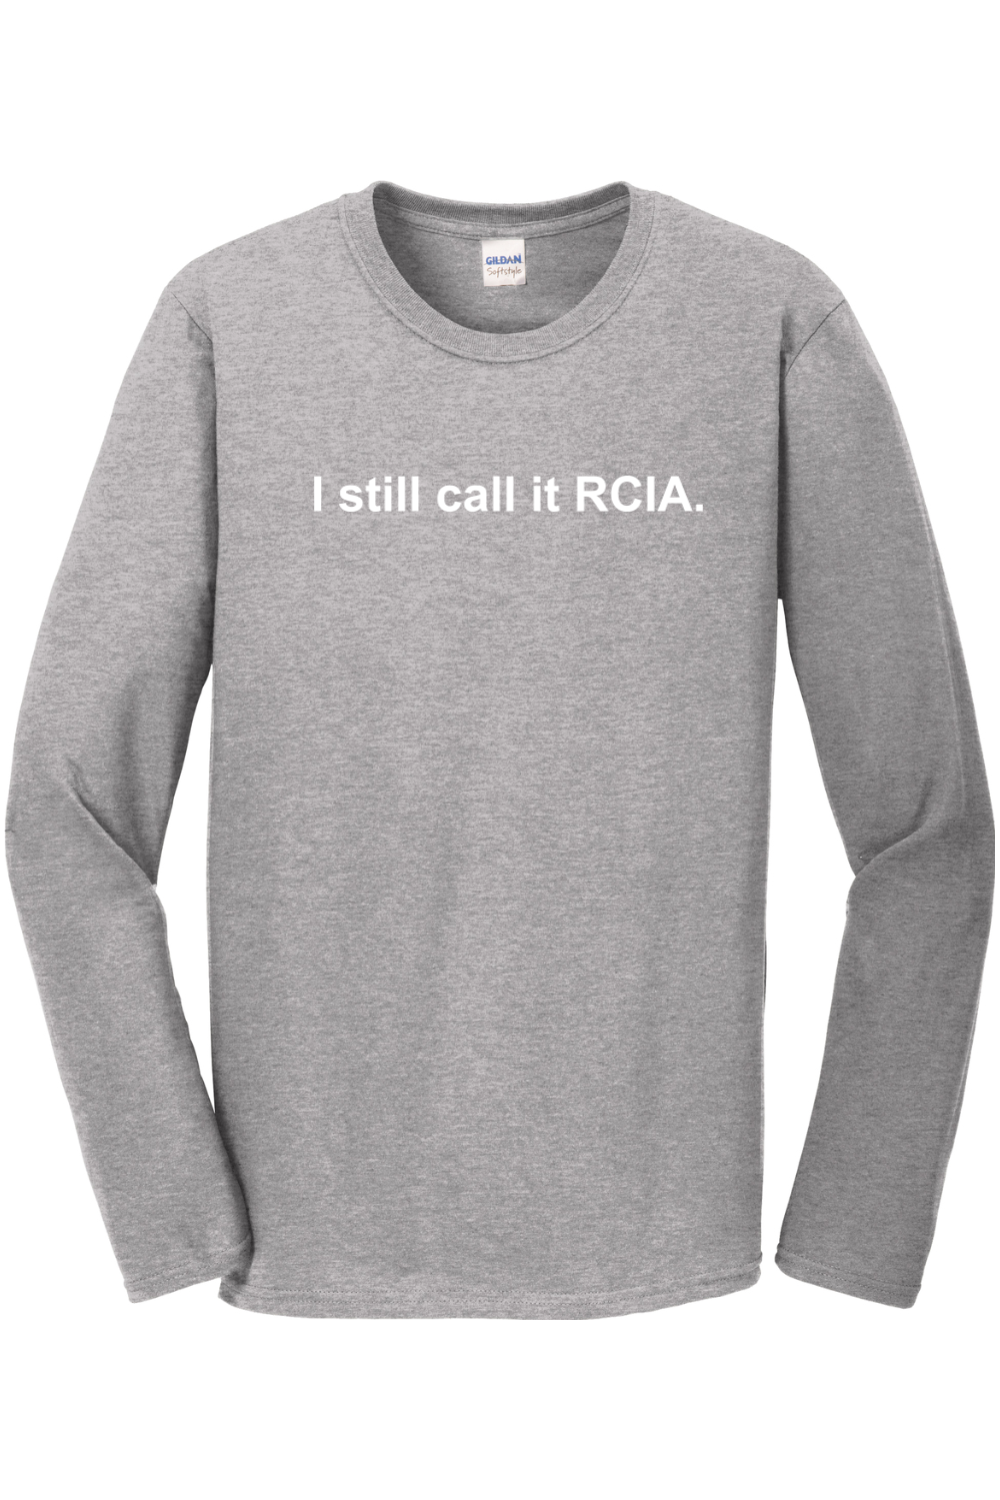 I Still Call it RCIA Long Sleeve